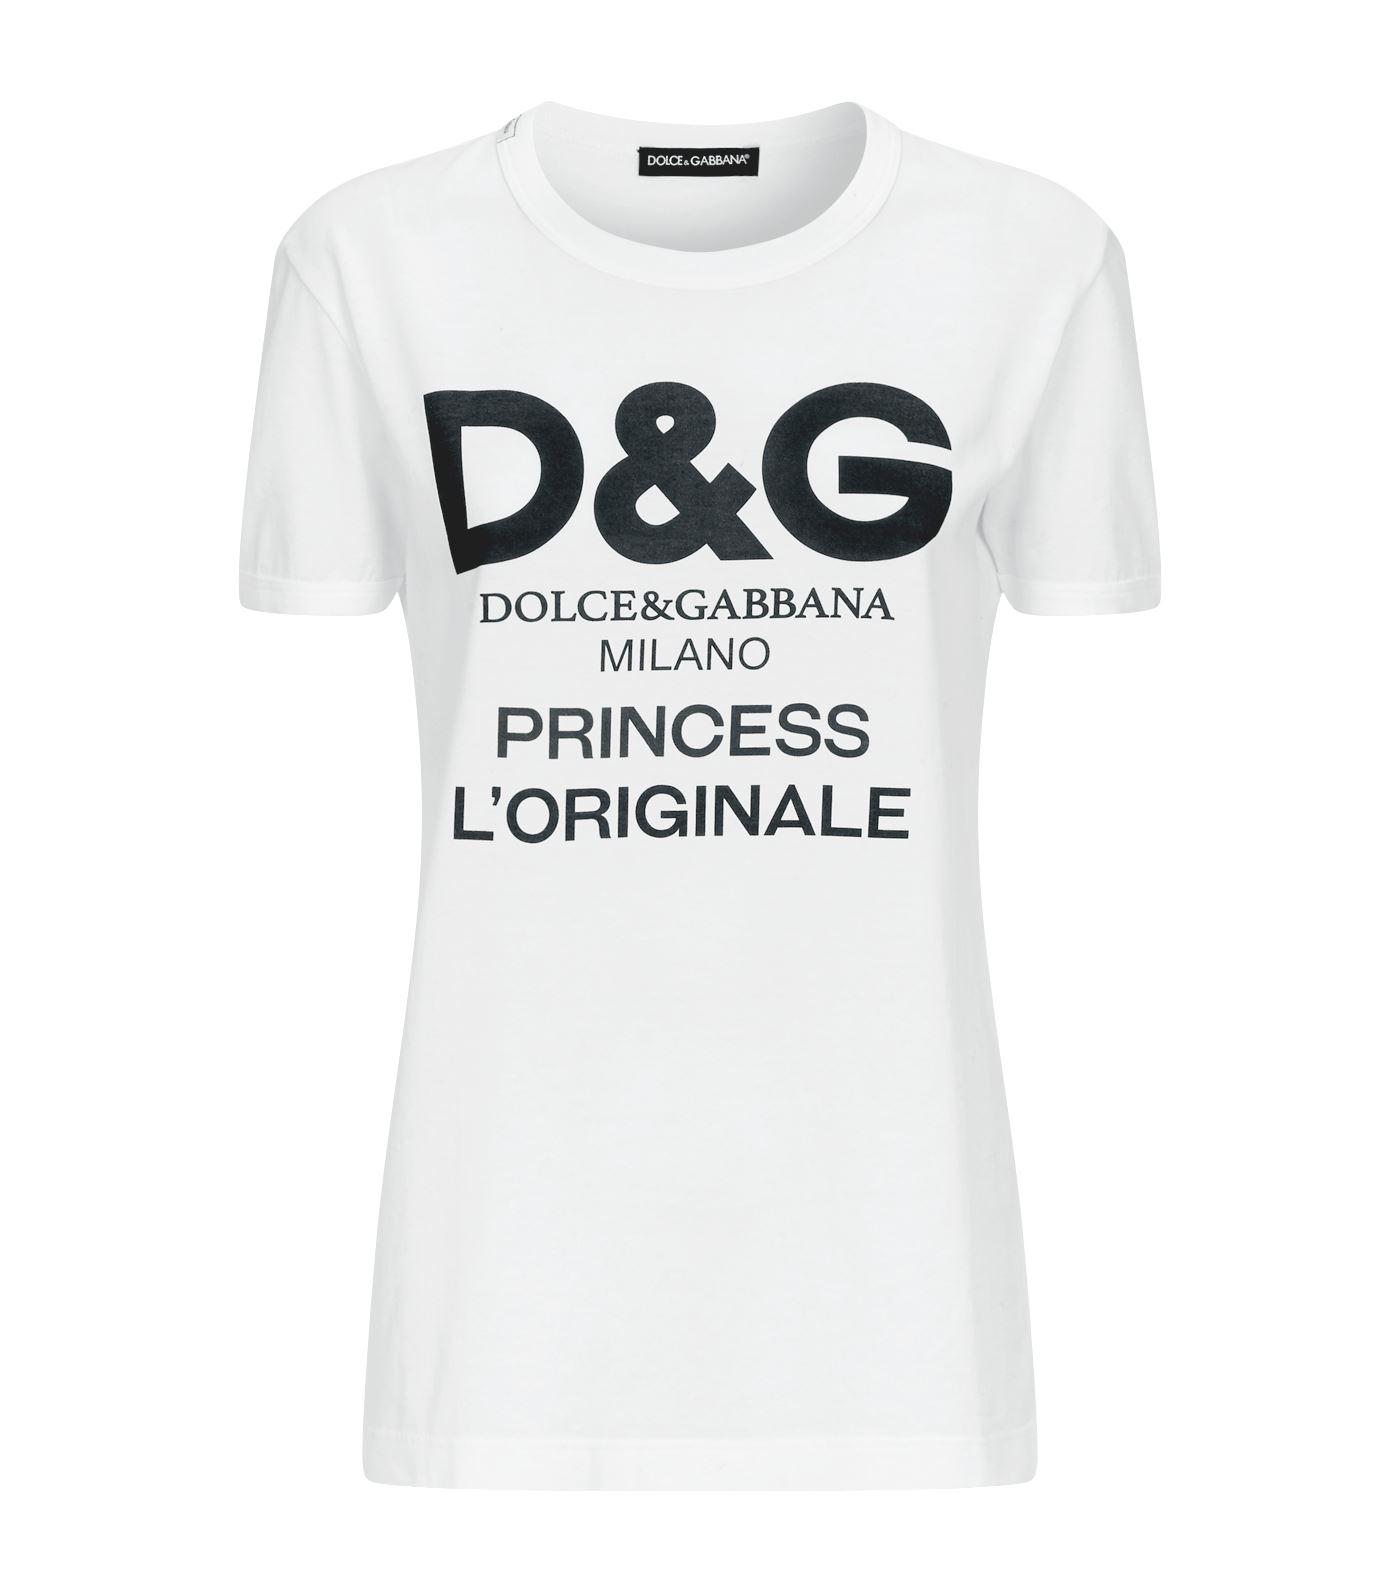 & Gabbana L'originale T-shirt in White | Lyst